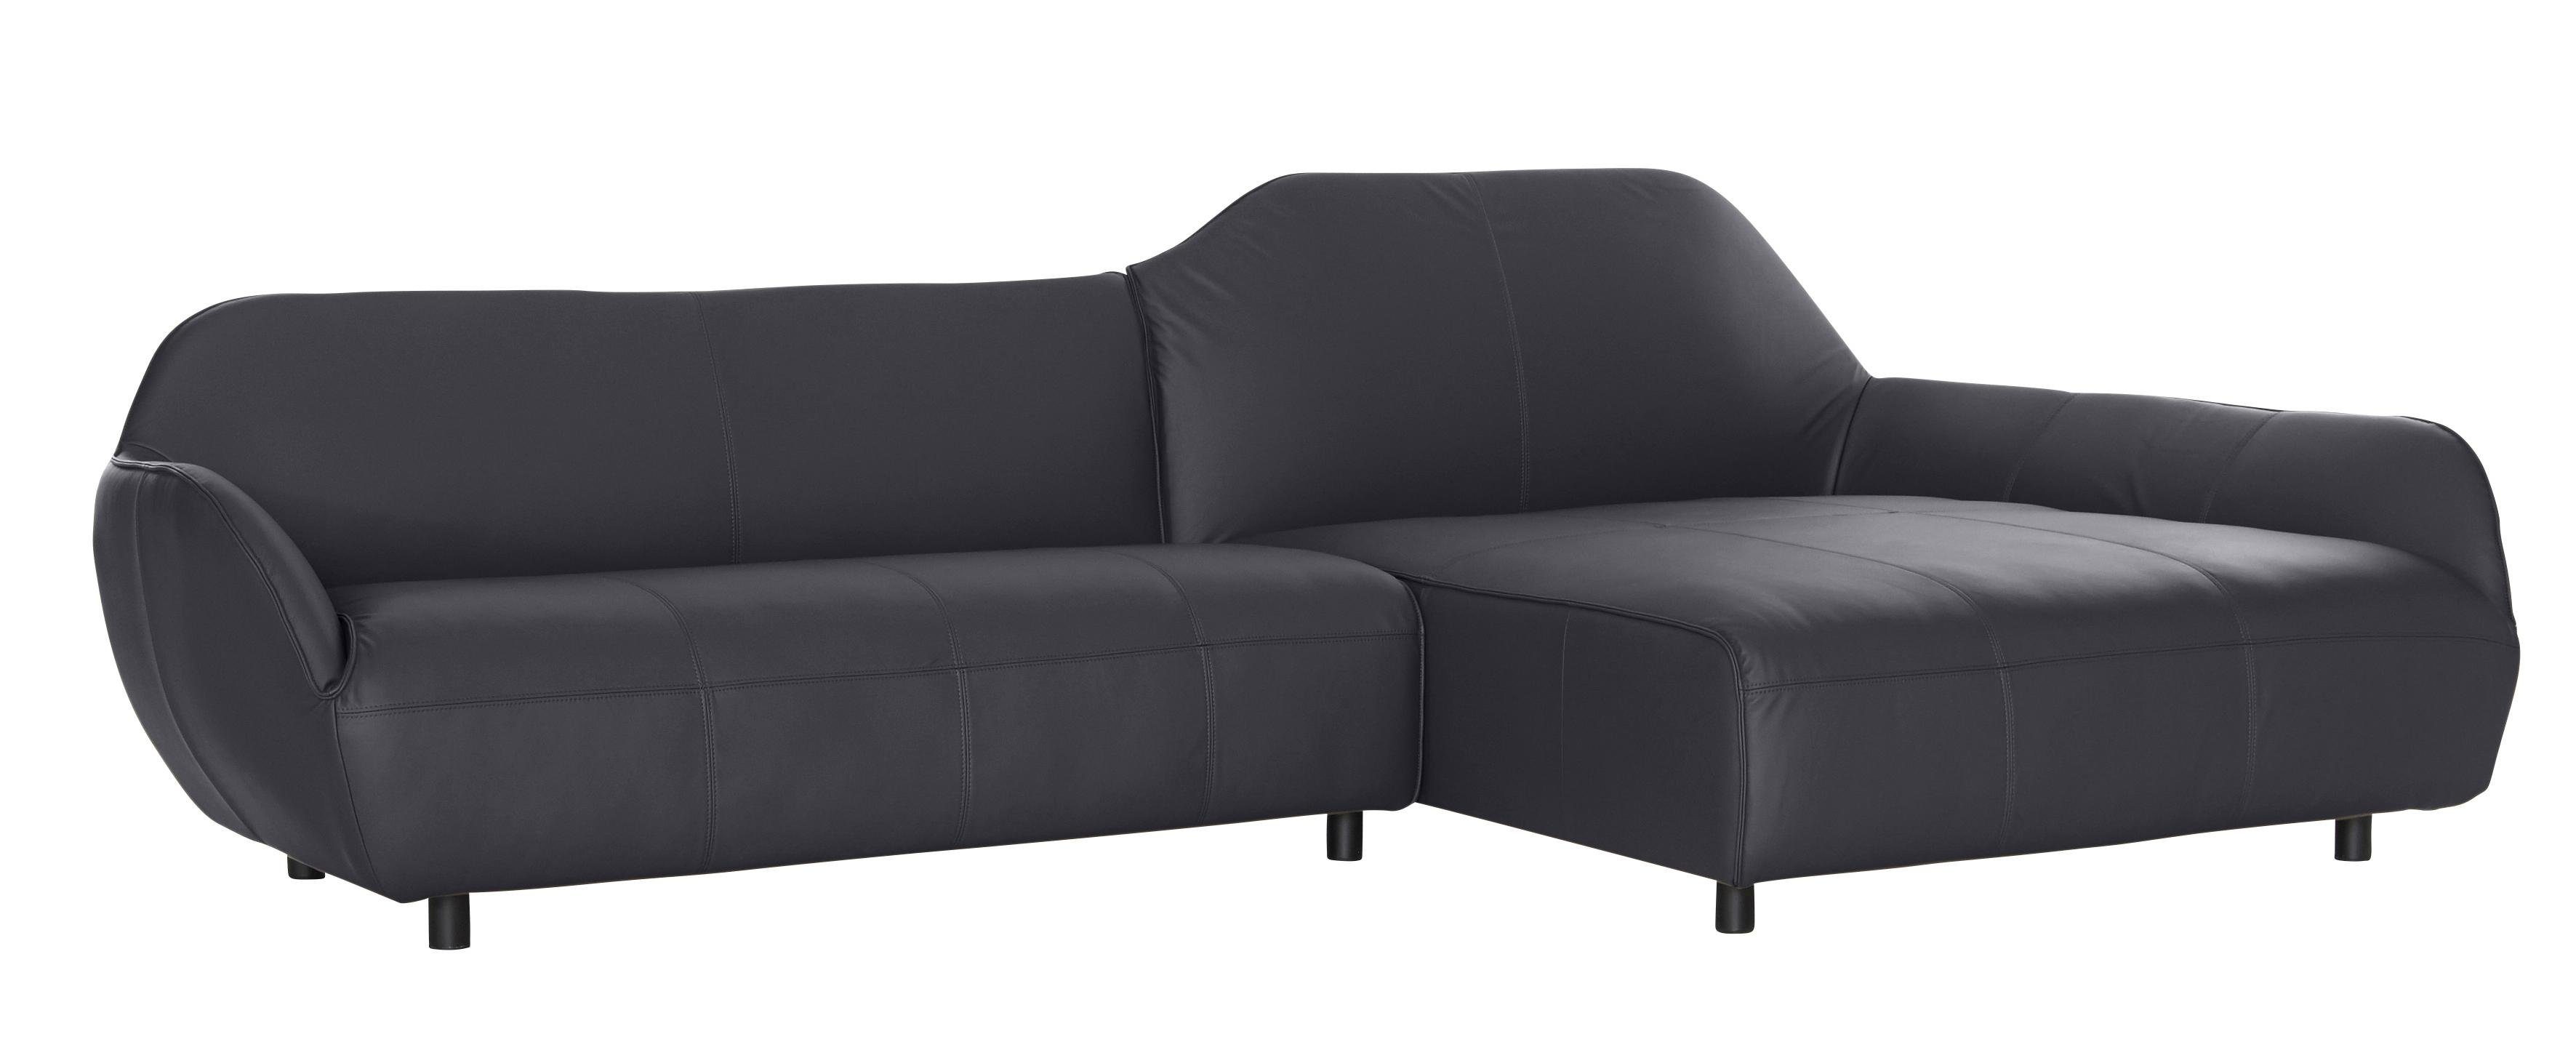 sofa in Ecksofa Bezugsqualitäten 2 hs.480, hülsta